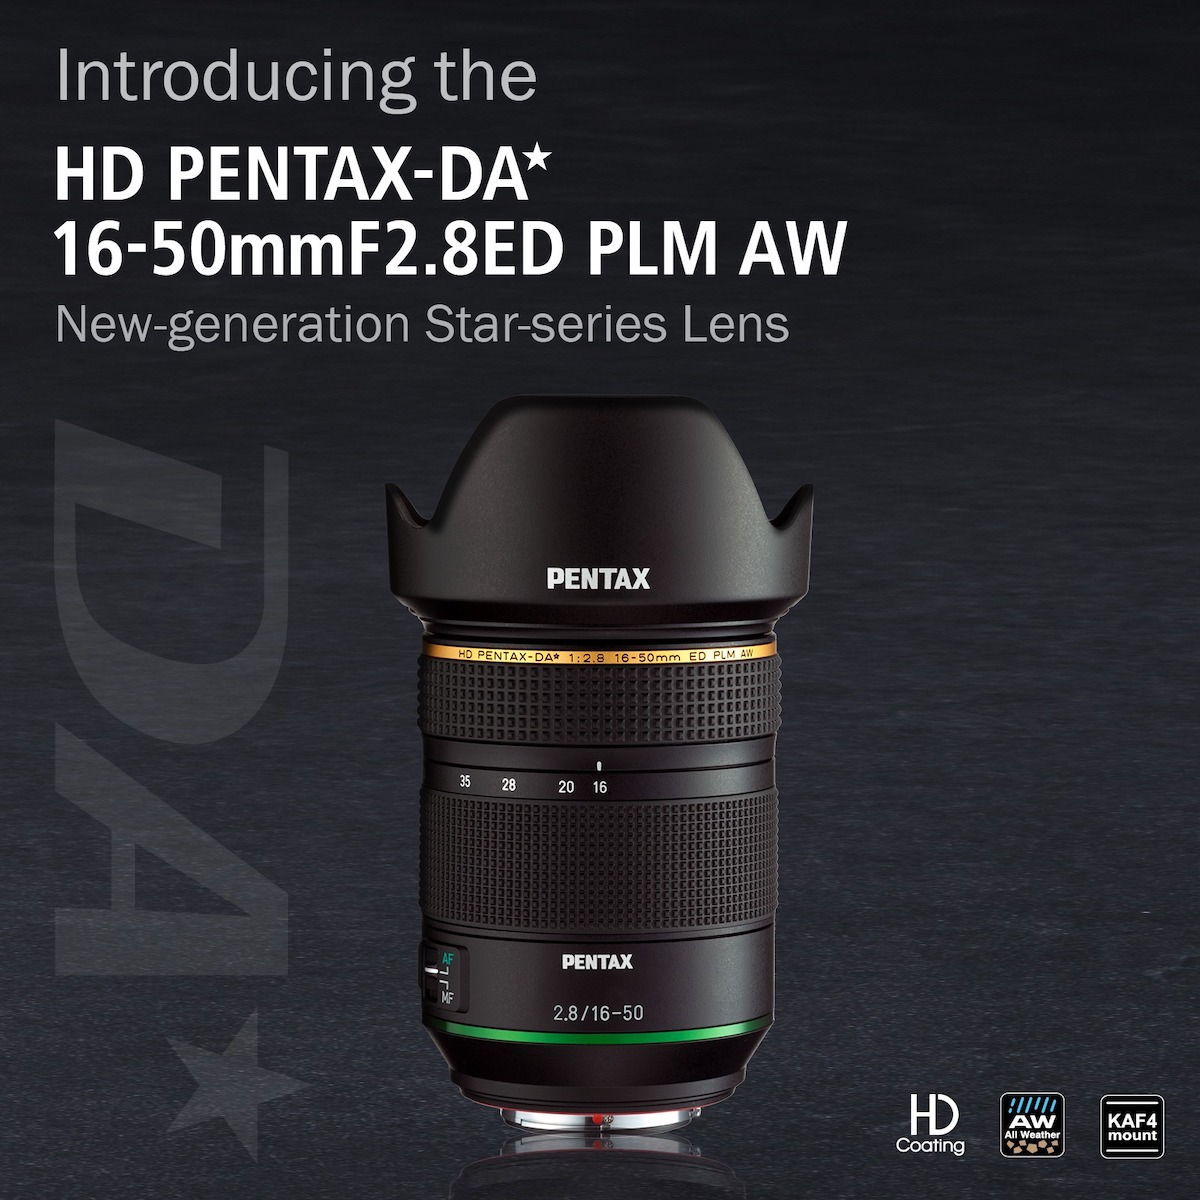 HD PENTAX-DA☆ 16-50mm f/2.8 ED PLM AW lens officially announced